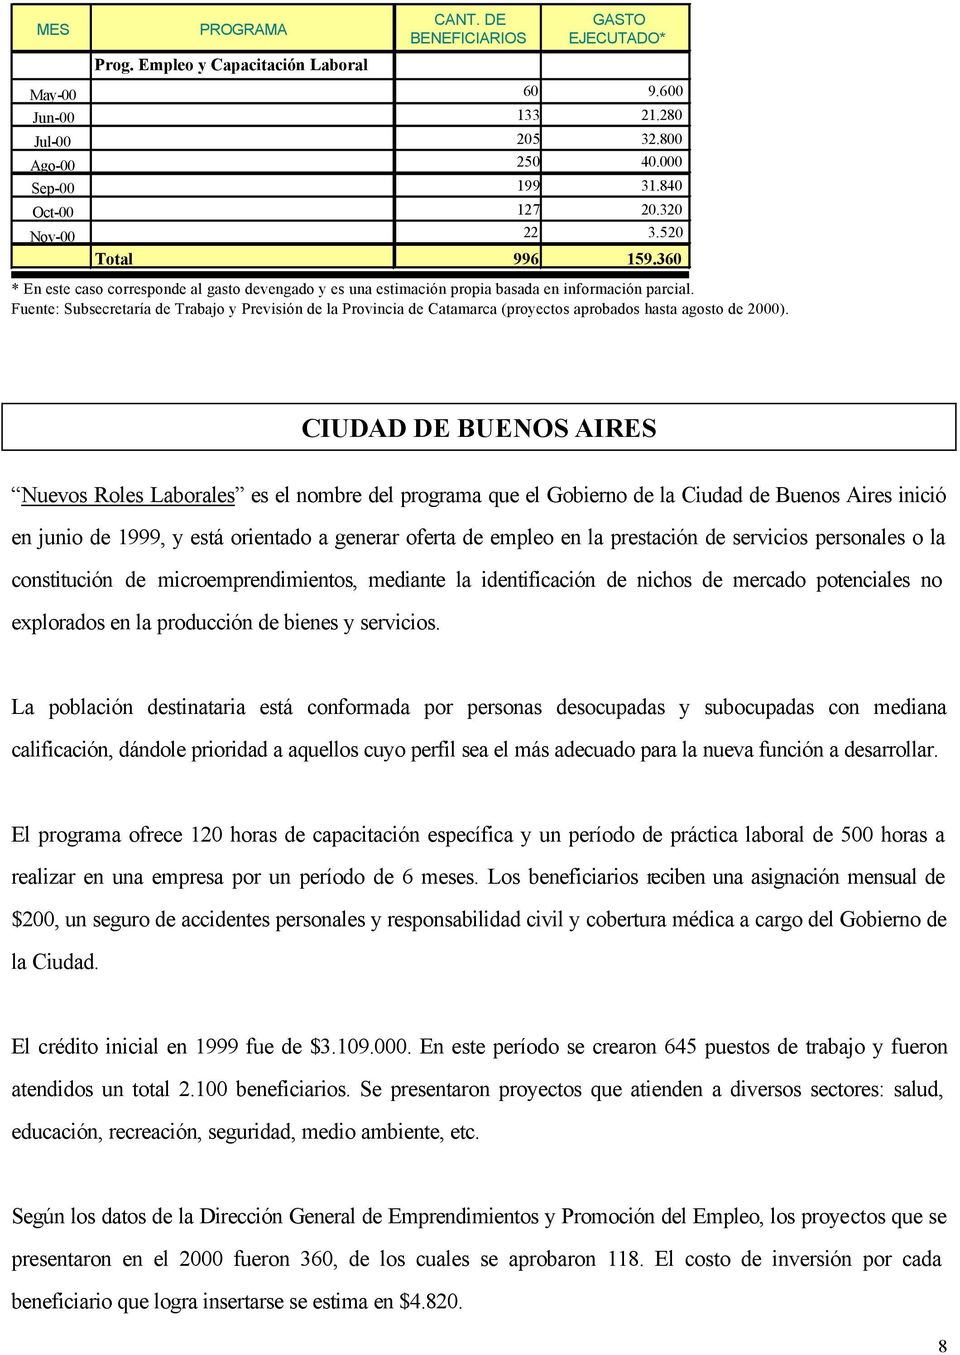 Fuente: Subsecretaría de Trabajo y Previsión de la Provincia de Catamarca (proyectos aprobados hasta agosto de 2000).